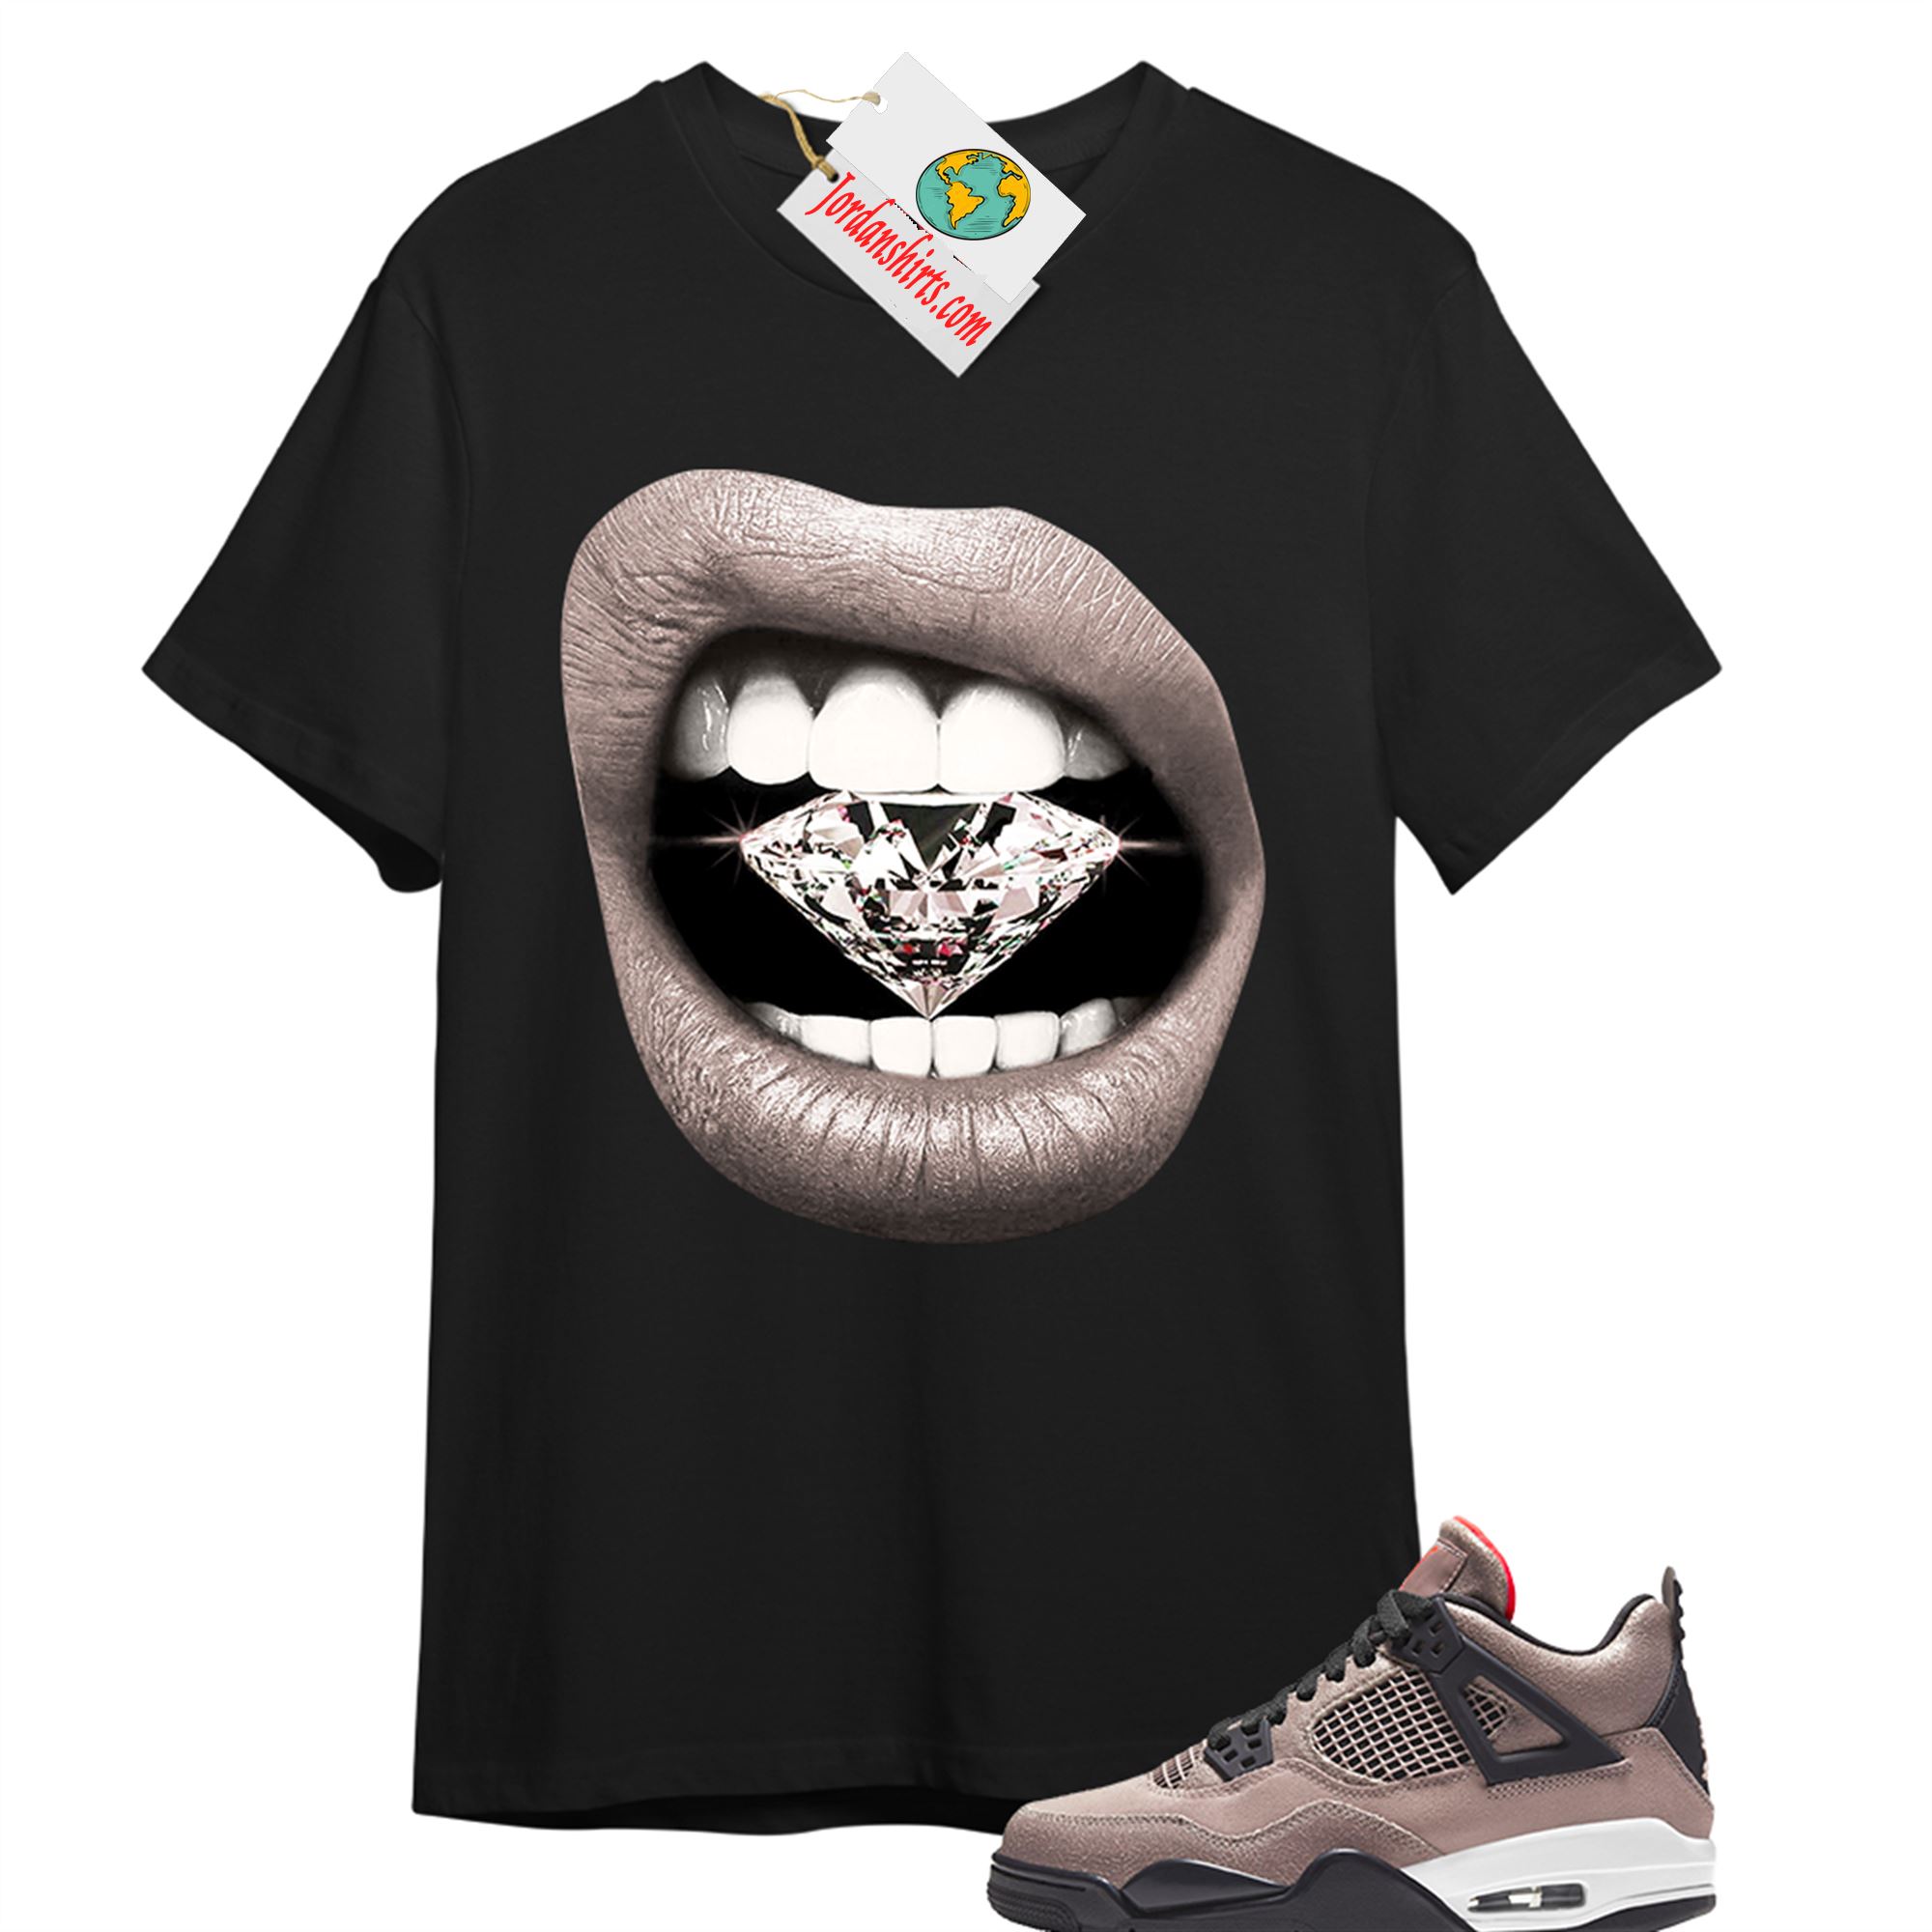 Jordan 4 Shirt, Diamond Lip Black T-shirt Air Jordan 4 Taupe Haze 4s Size Up To 5xl